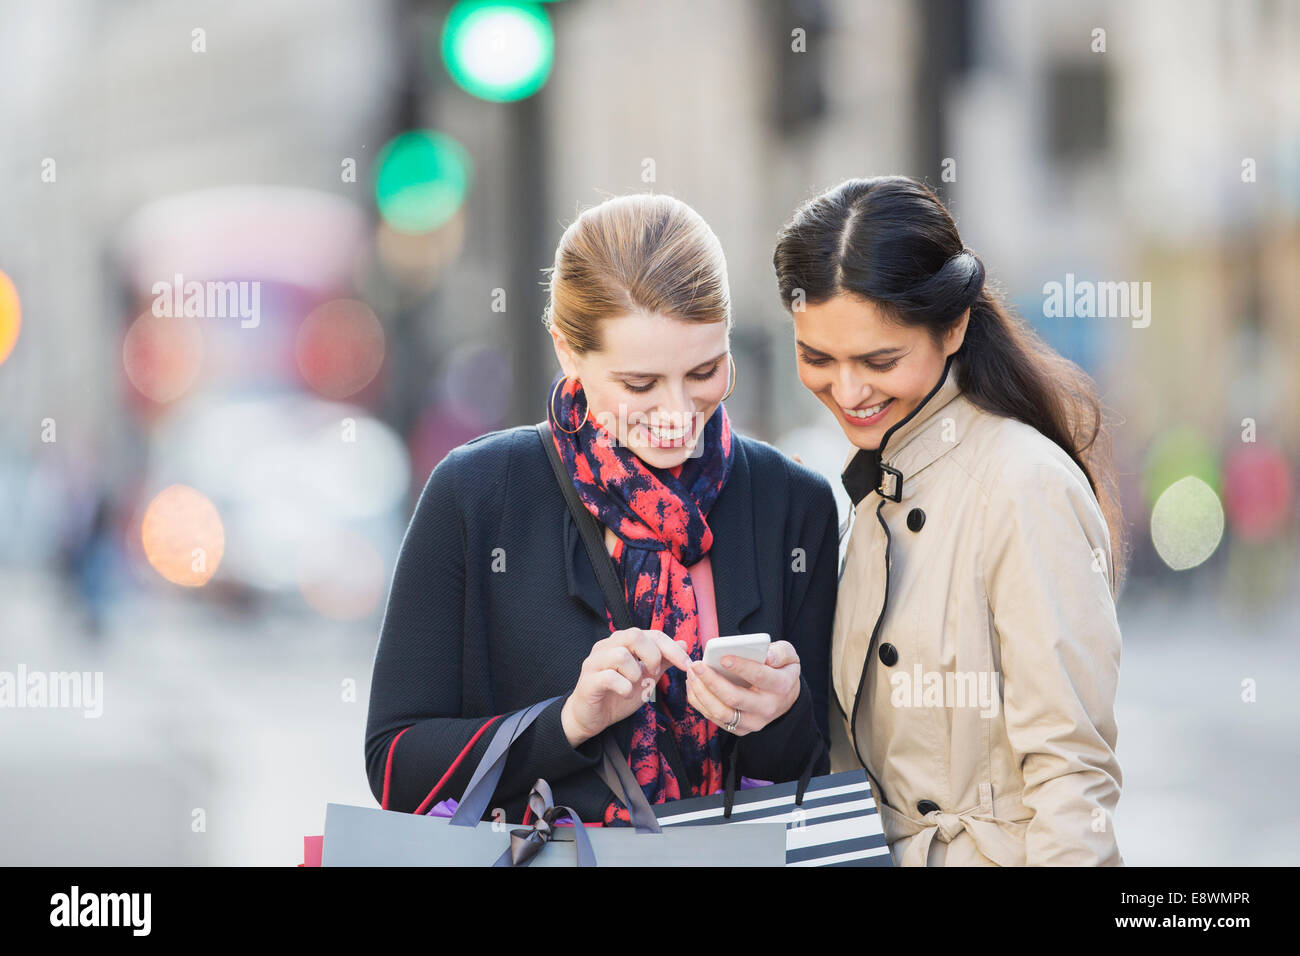 Les femmes à la recherche de cell phone on city street Banque D'Images